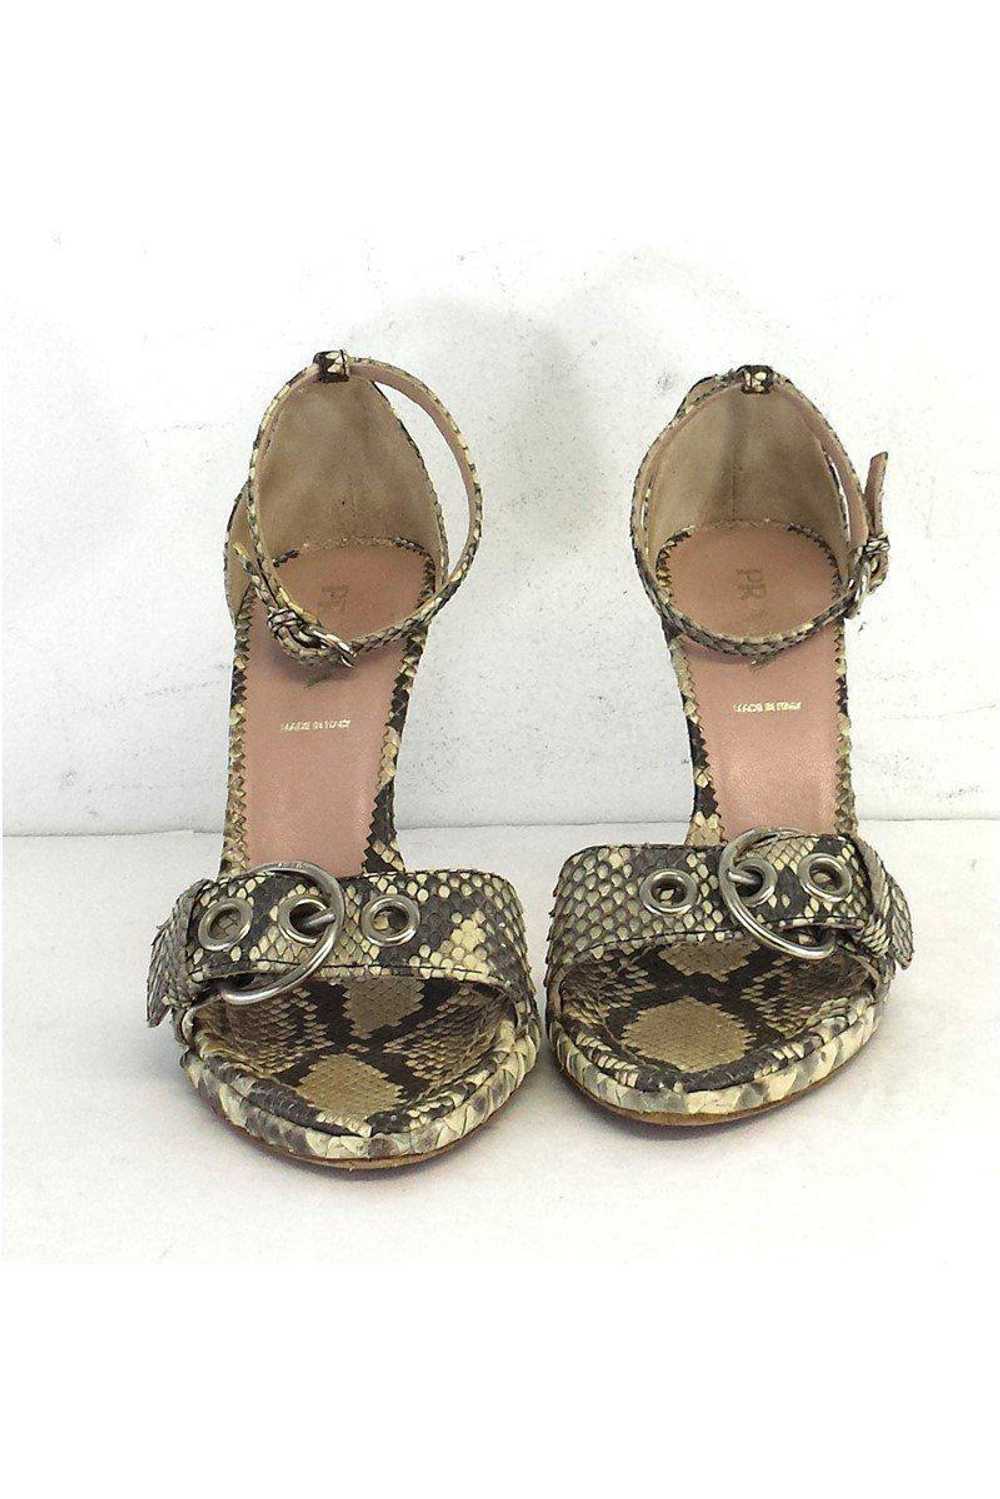 Prada - Beige & Grey Snakeskin Sandal Heels Sz 7 - image 2